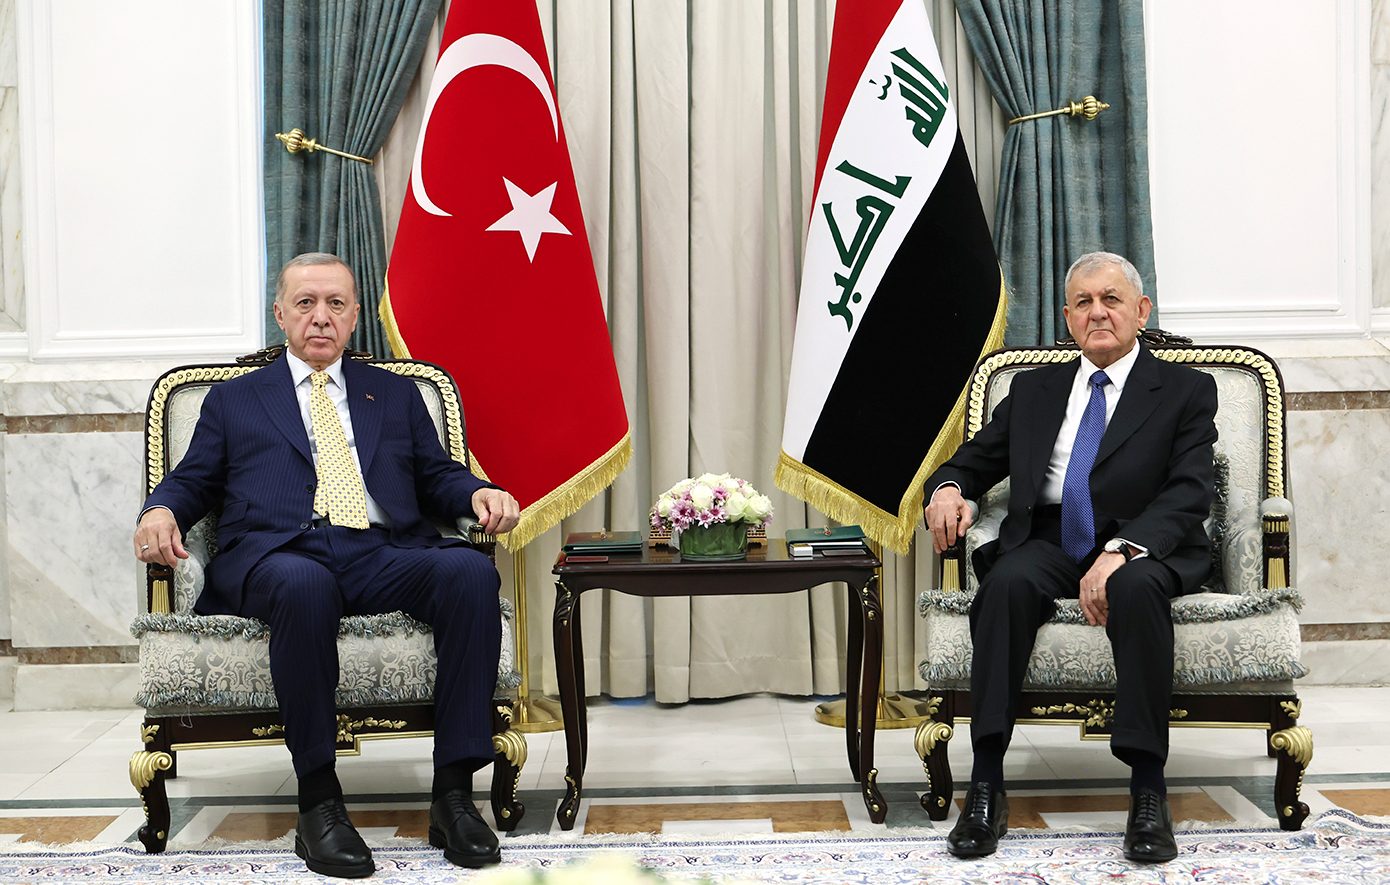 Ο Ερντογάν συναντήθηκε με τον Ιρακινό ομόλογό του στη Βαγδάτη